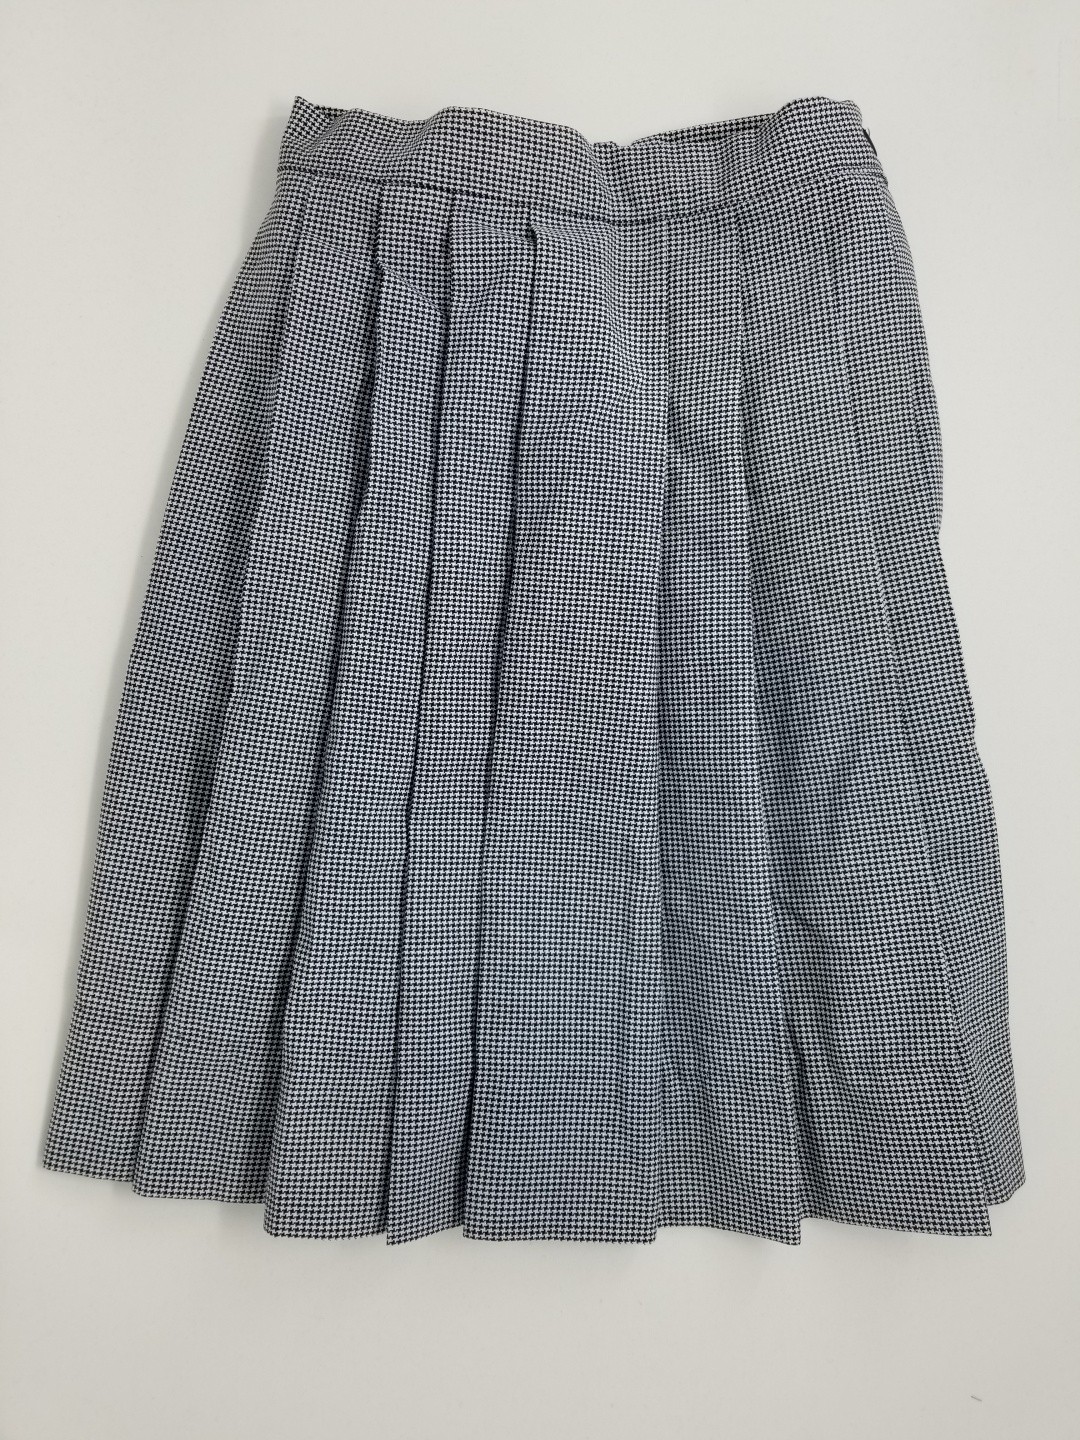 Knife Pleated Skirt- Style 06/16-Plaid 29